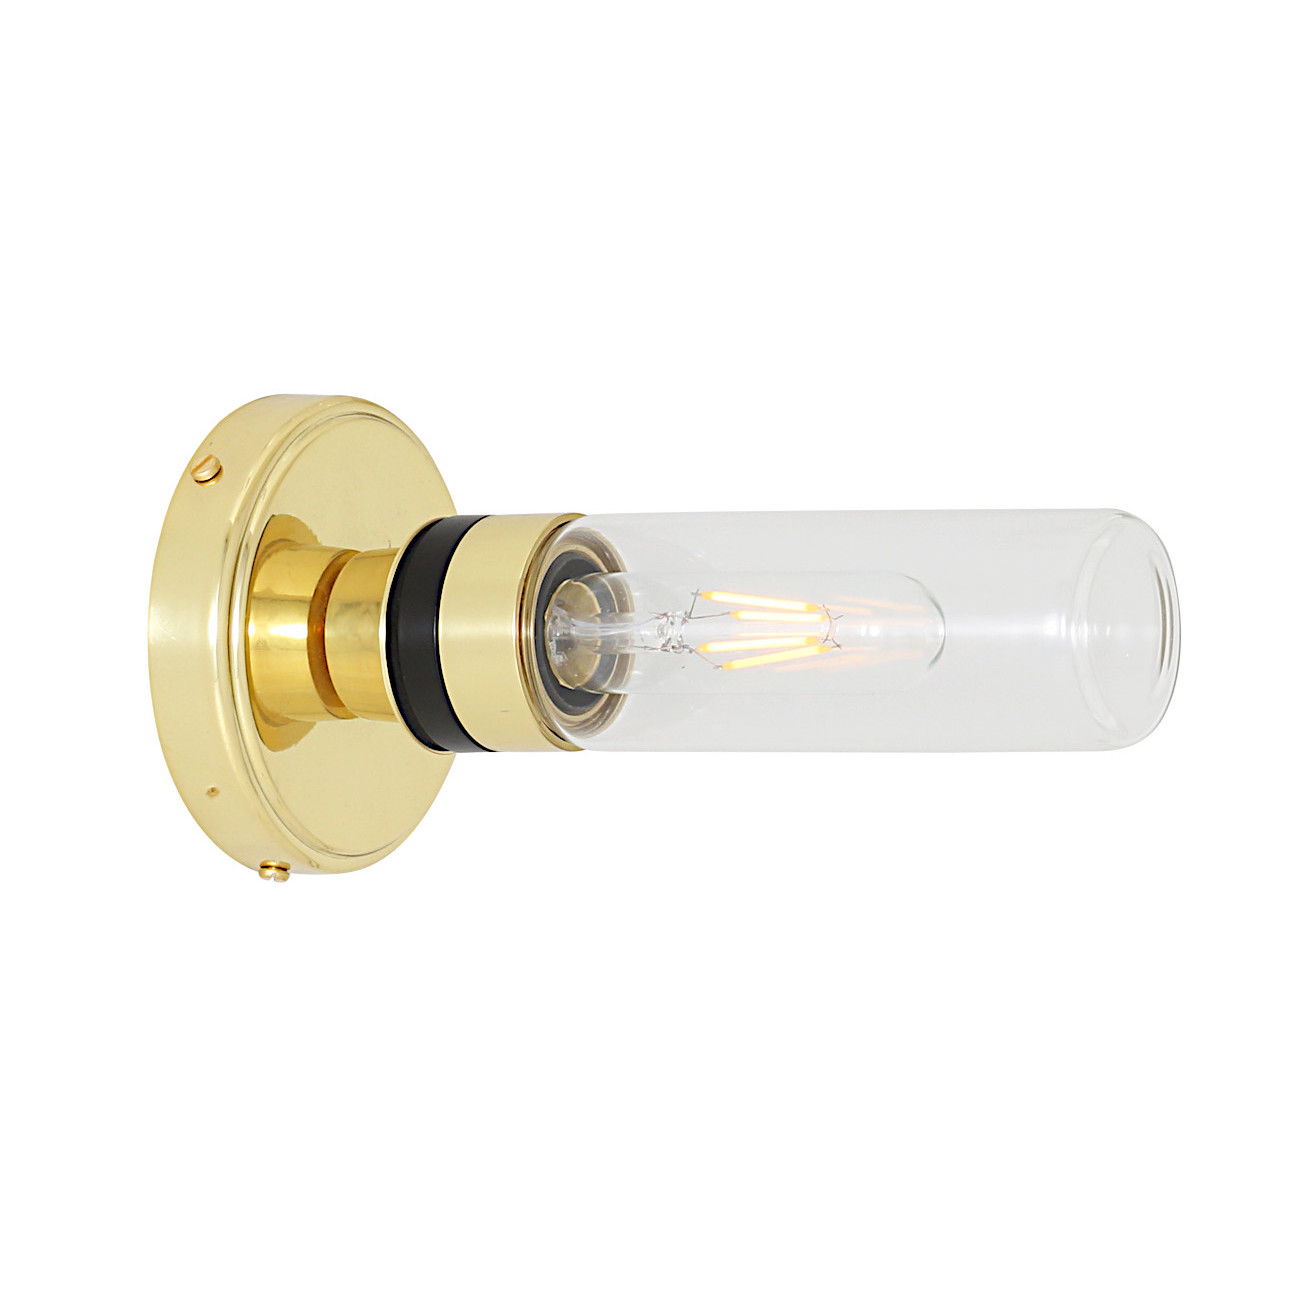 Badezimmer-Wandlampe mit kleinem Glaszylinder (klar oder prismatisch), IP65: Messing poliert, klares Glas